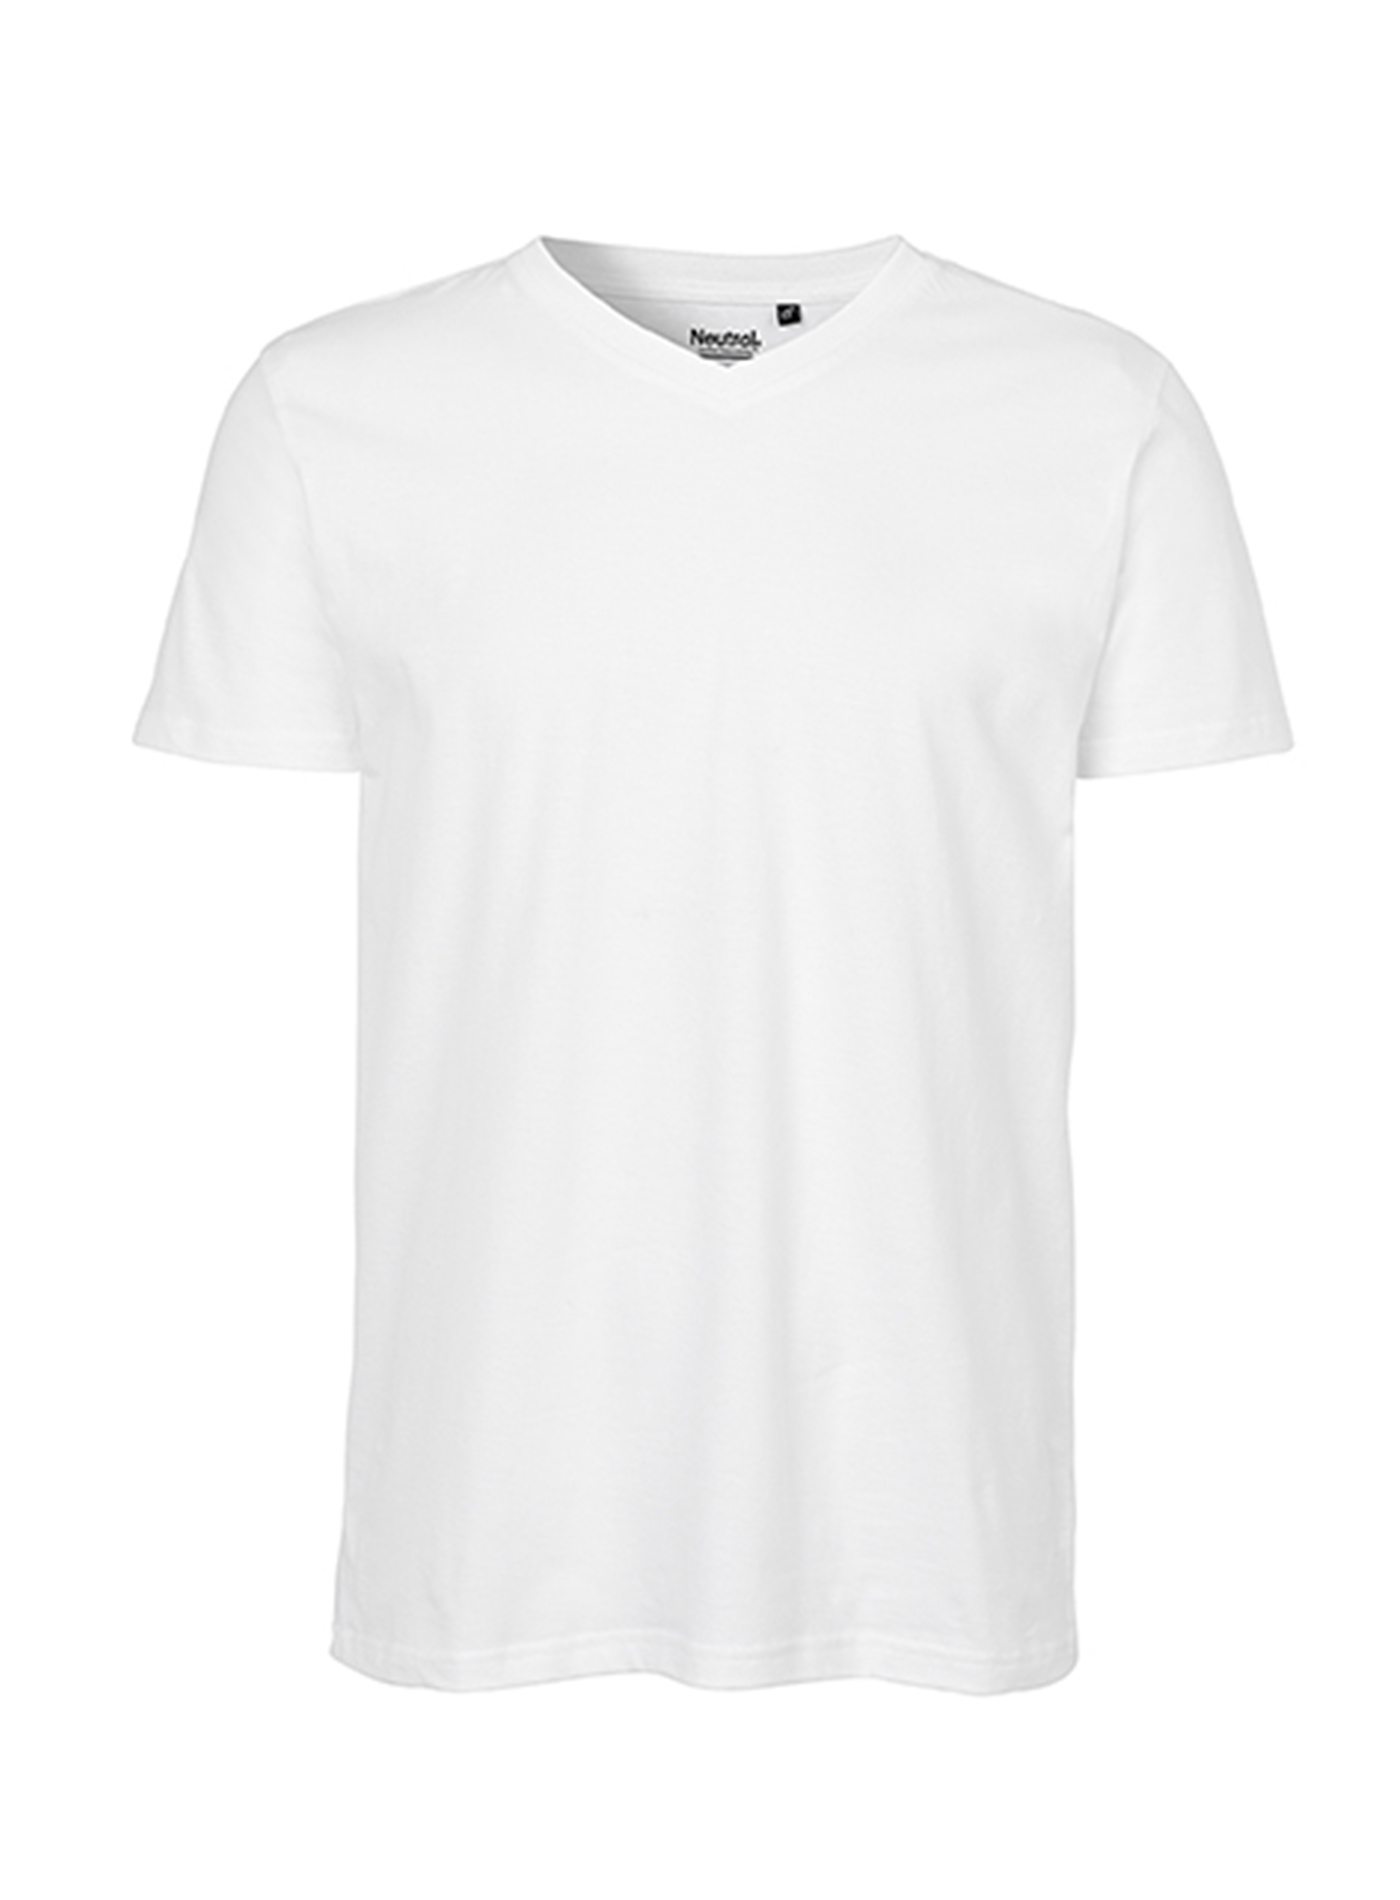 Pánské tričko Neutral V-Neck - Bílá XL